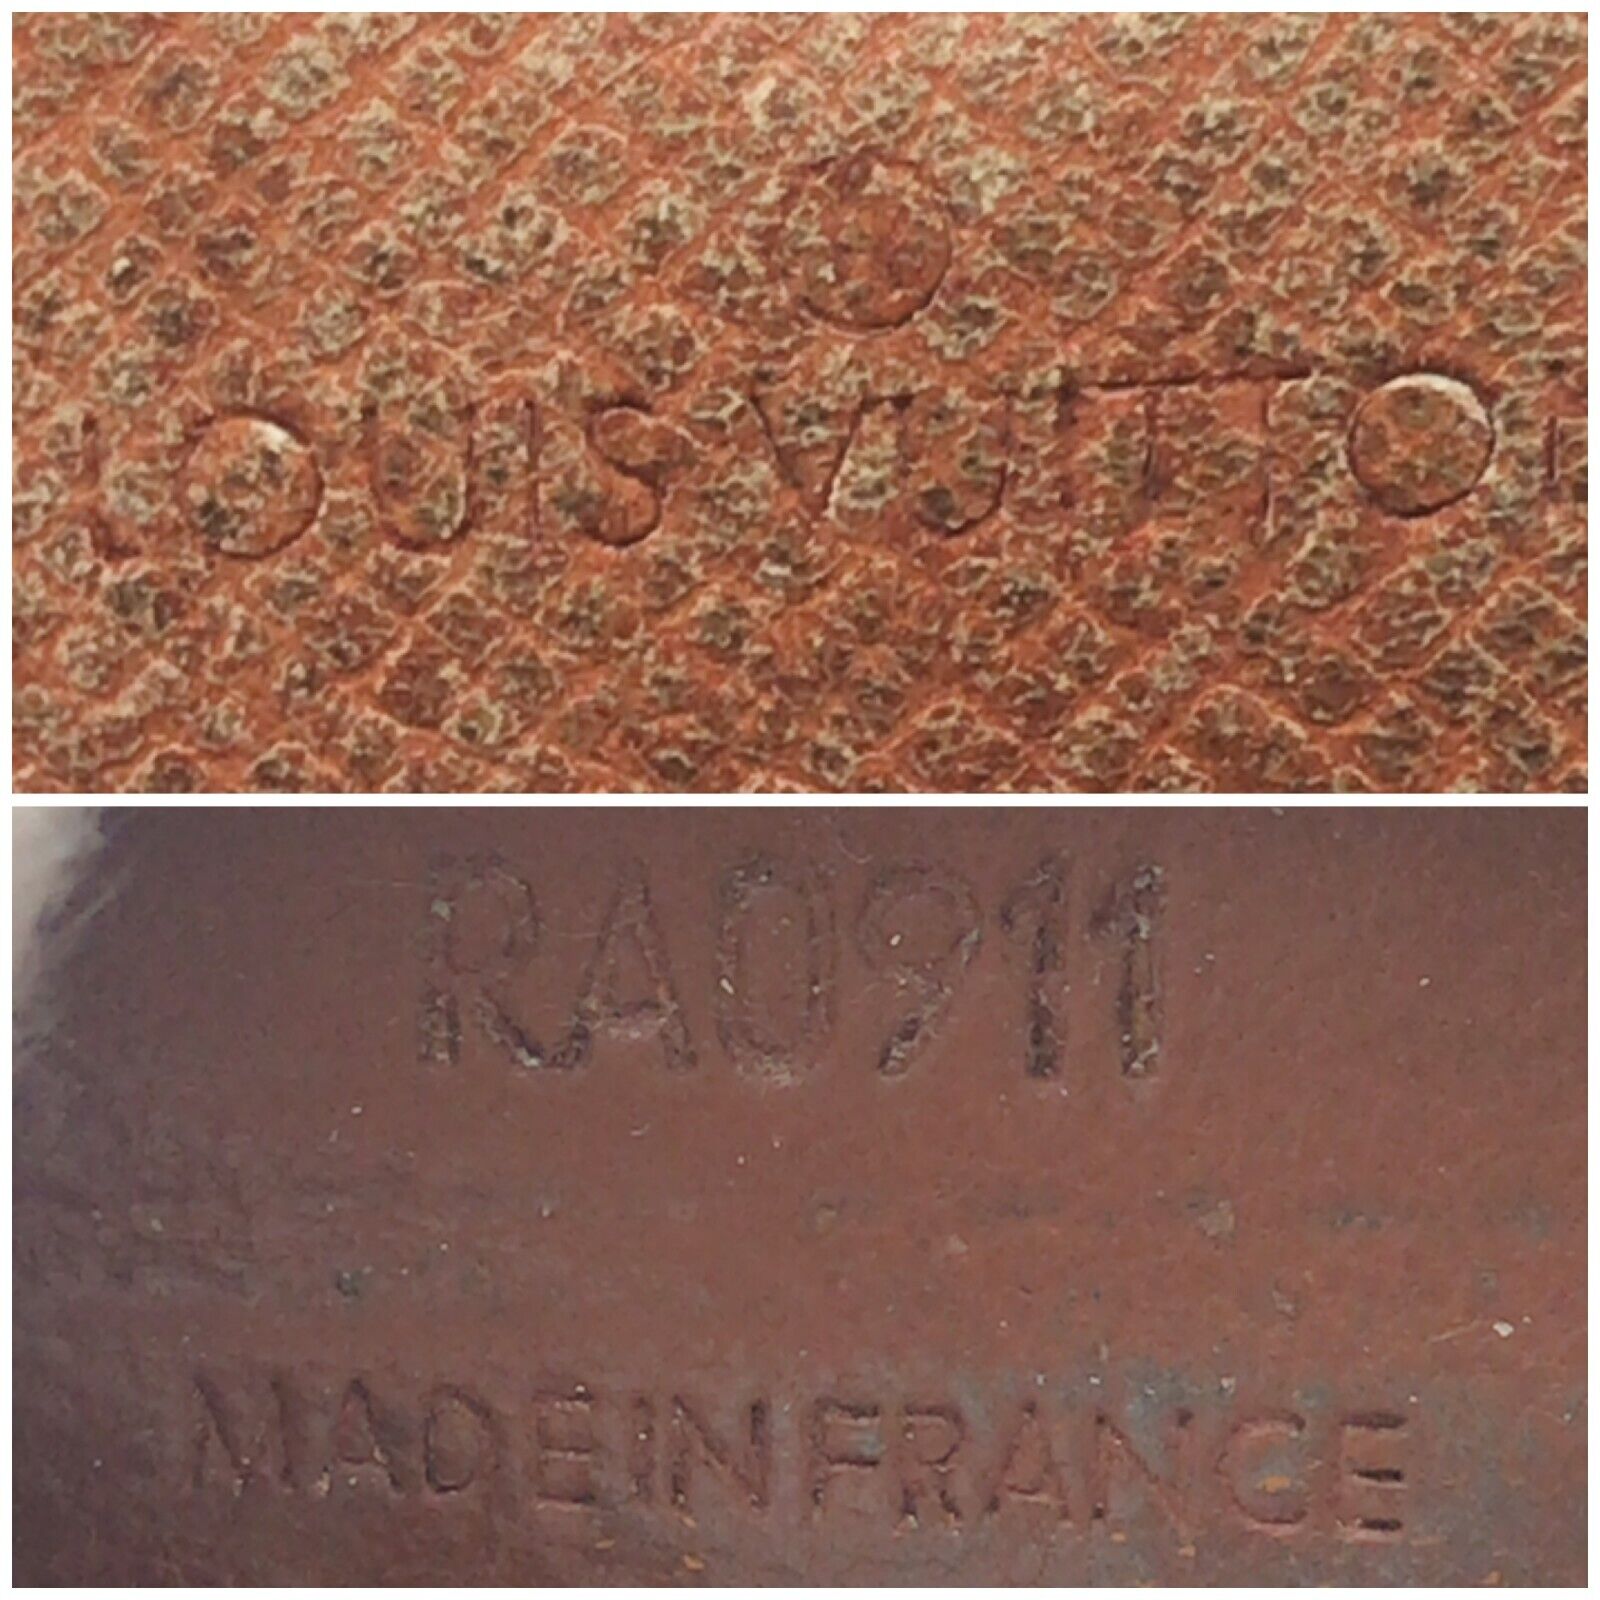 Louis-Vuitton-Monogram-Porte-Monnaie-Plat-Coin-Case-M61930